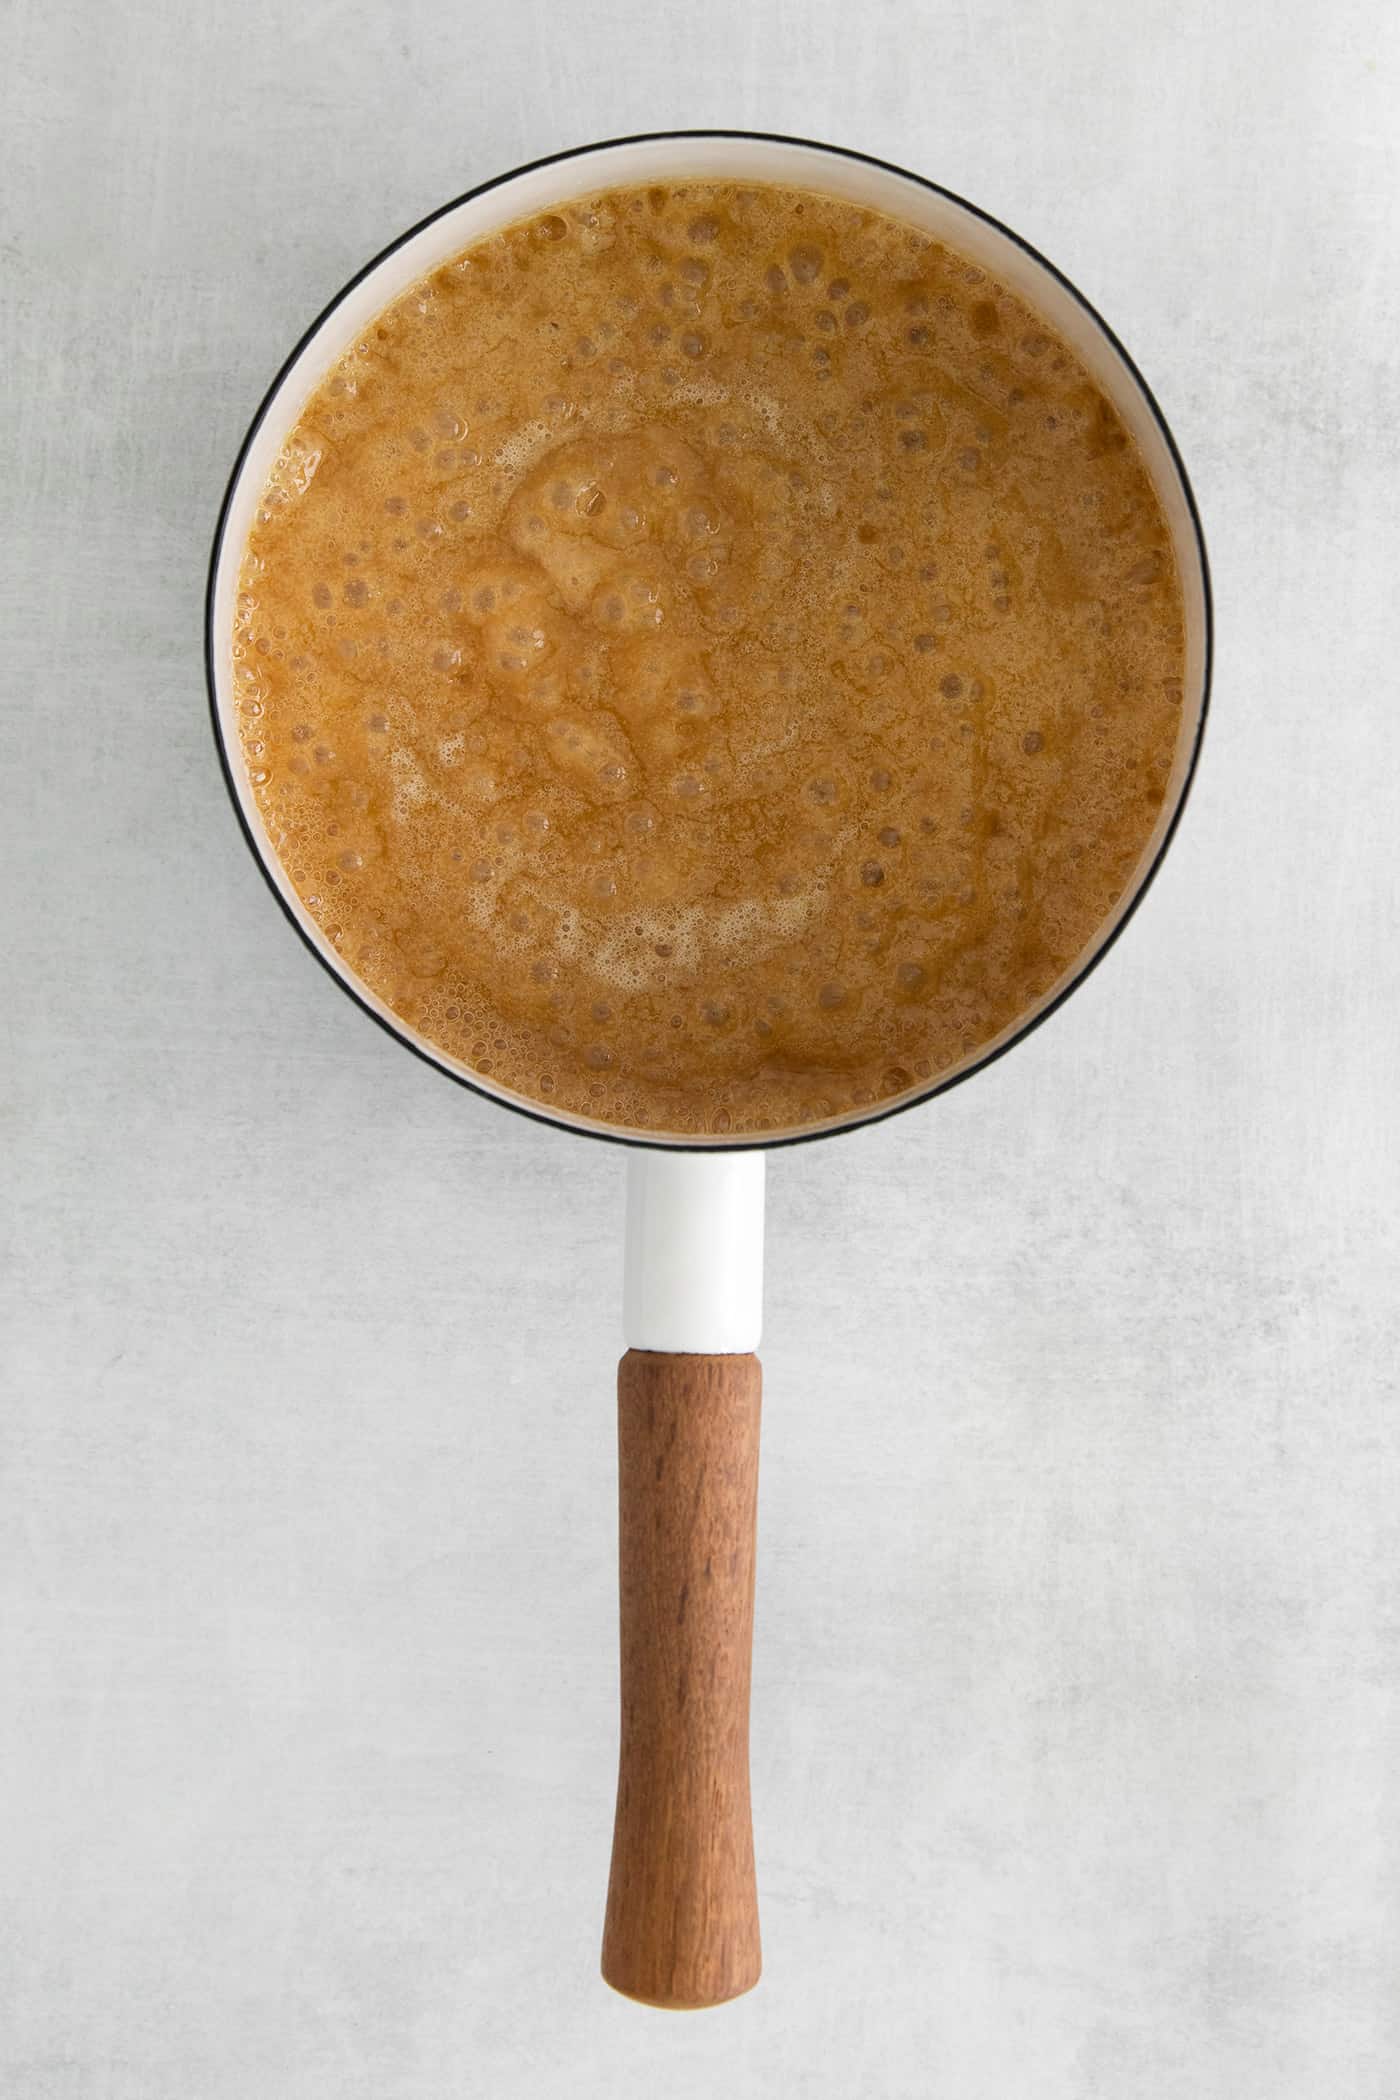 Caramel in a sauce pan